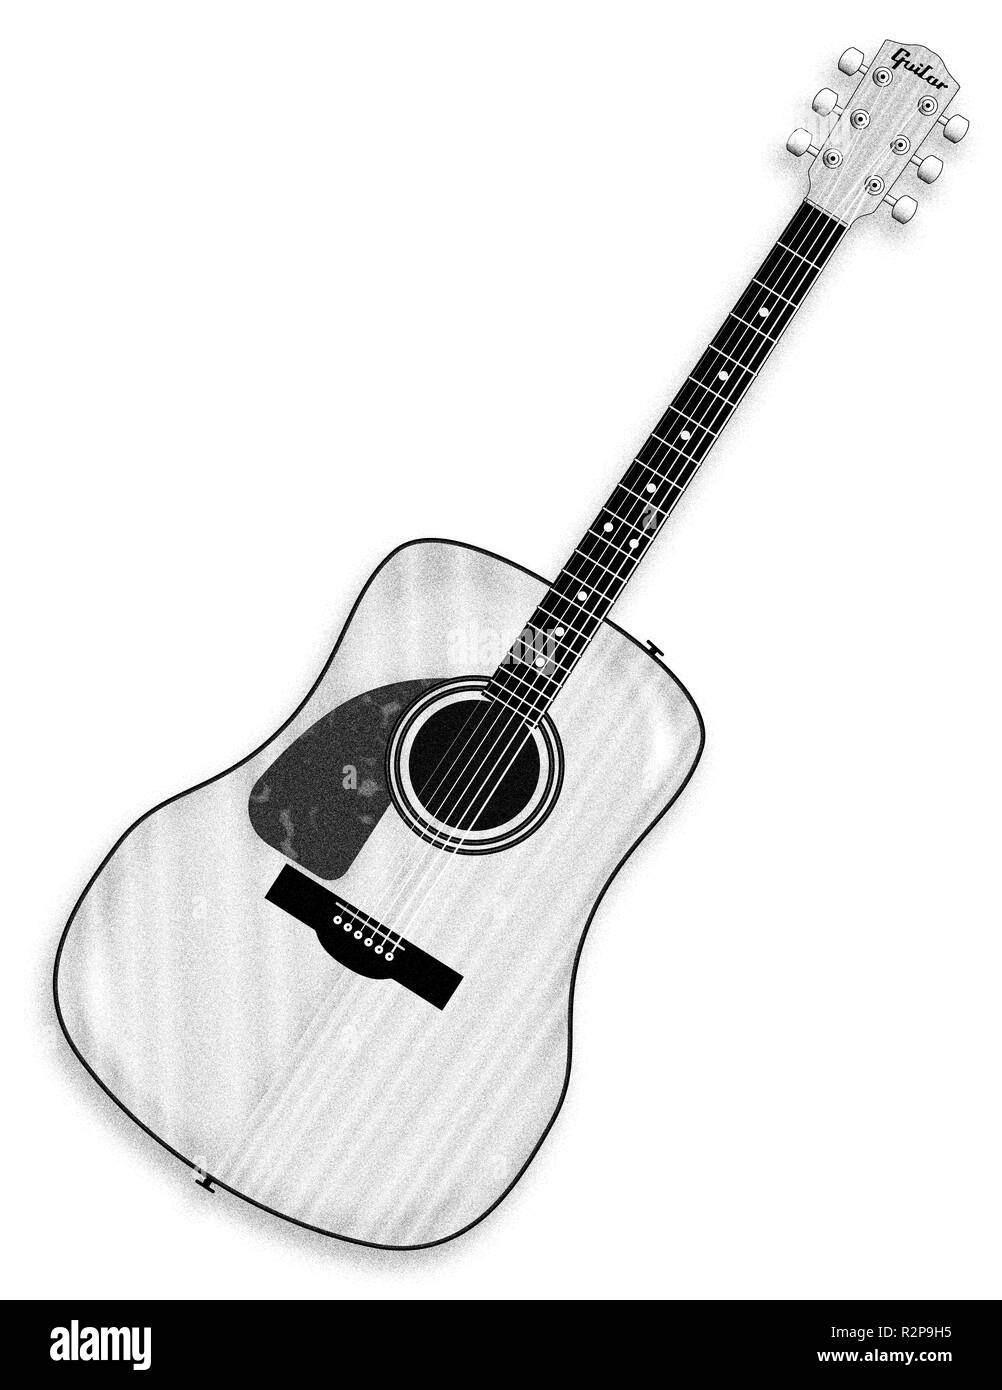 Eine typische Links Akustik Gitarre Zeichnung übergeben isoliert auf einem  weißen Hintergrund Stockfotografie - Alamy